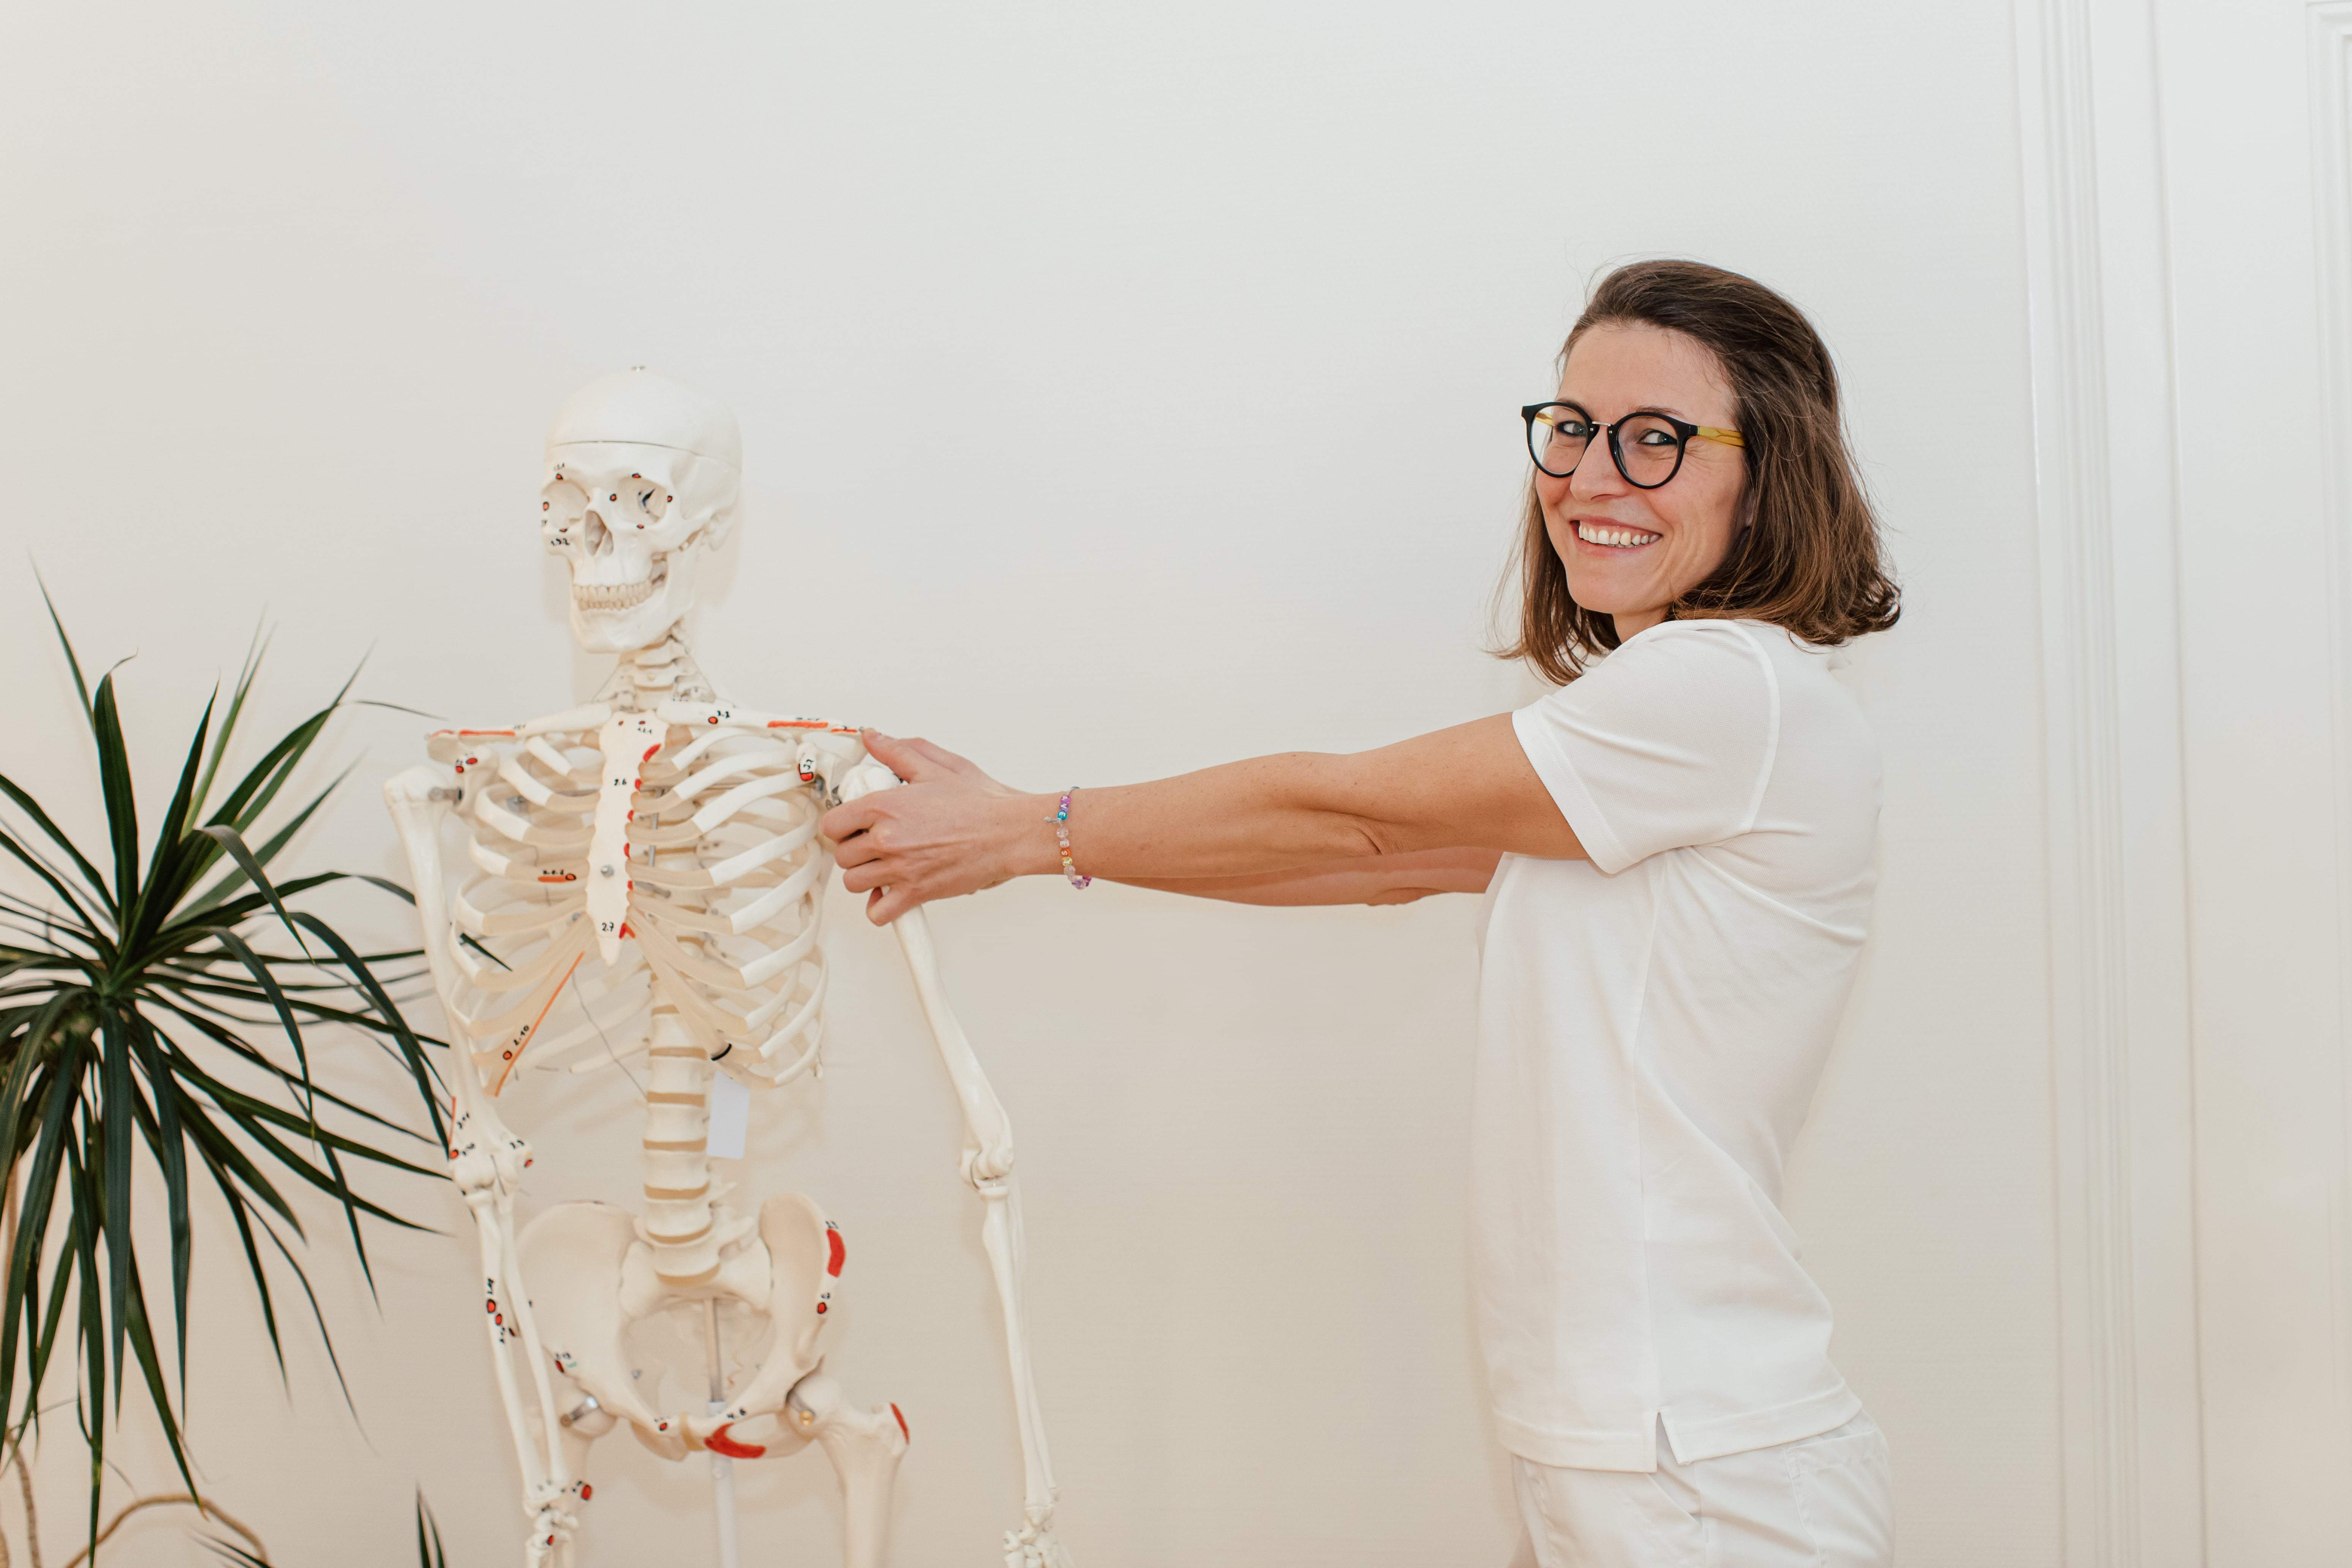 Osteopressur nach Liebscher & Bracht gezeigt am Skelett